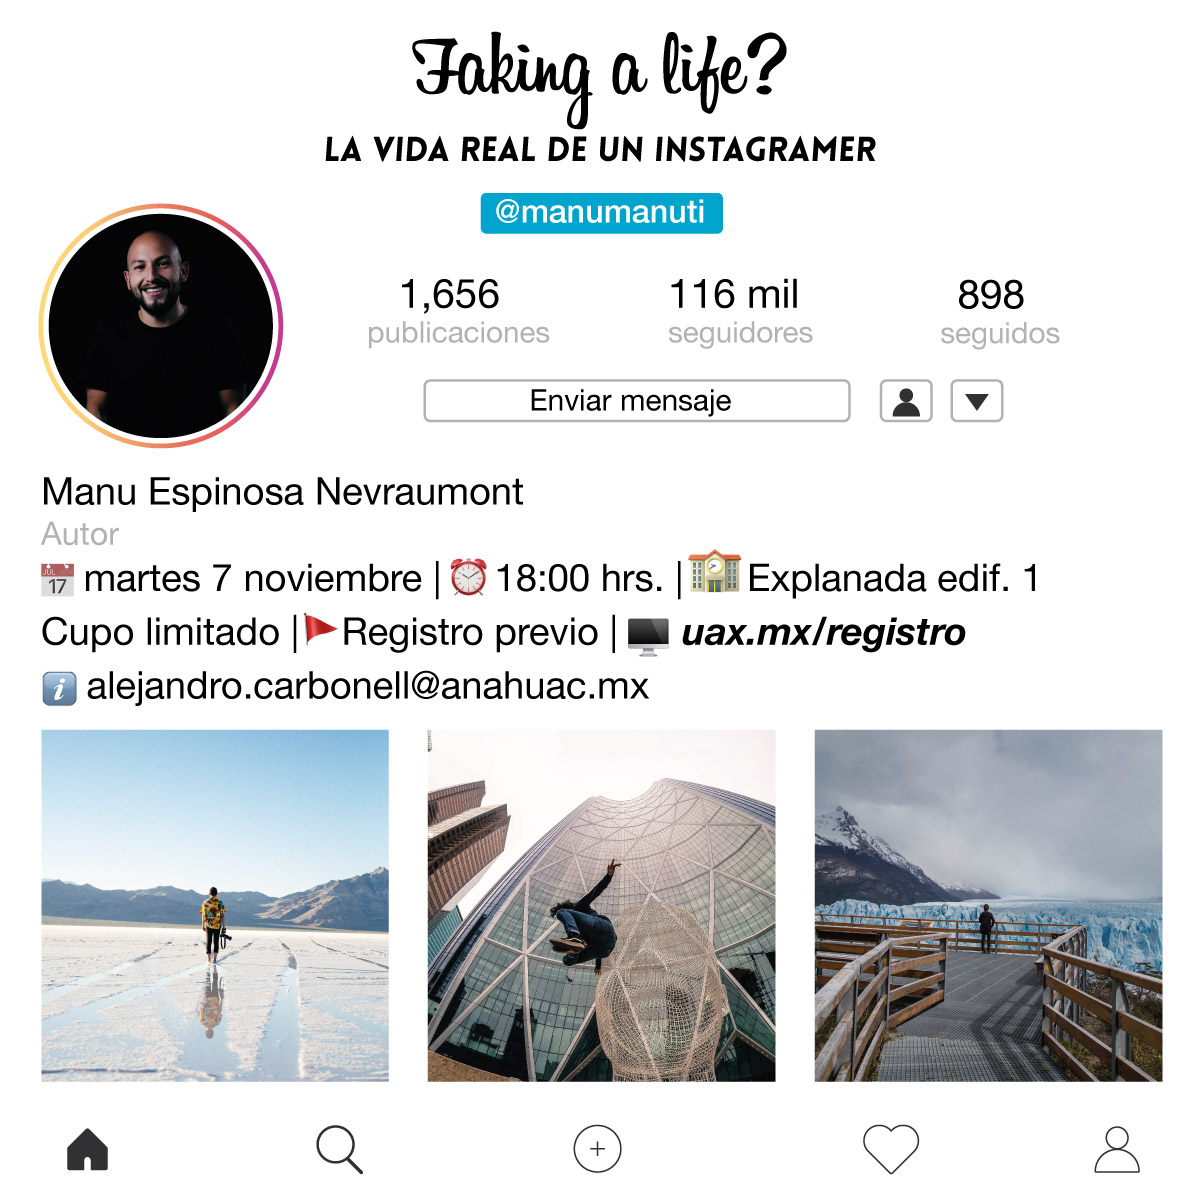 Faking a life? La vida real de un instagramer